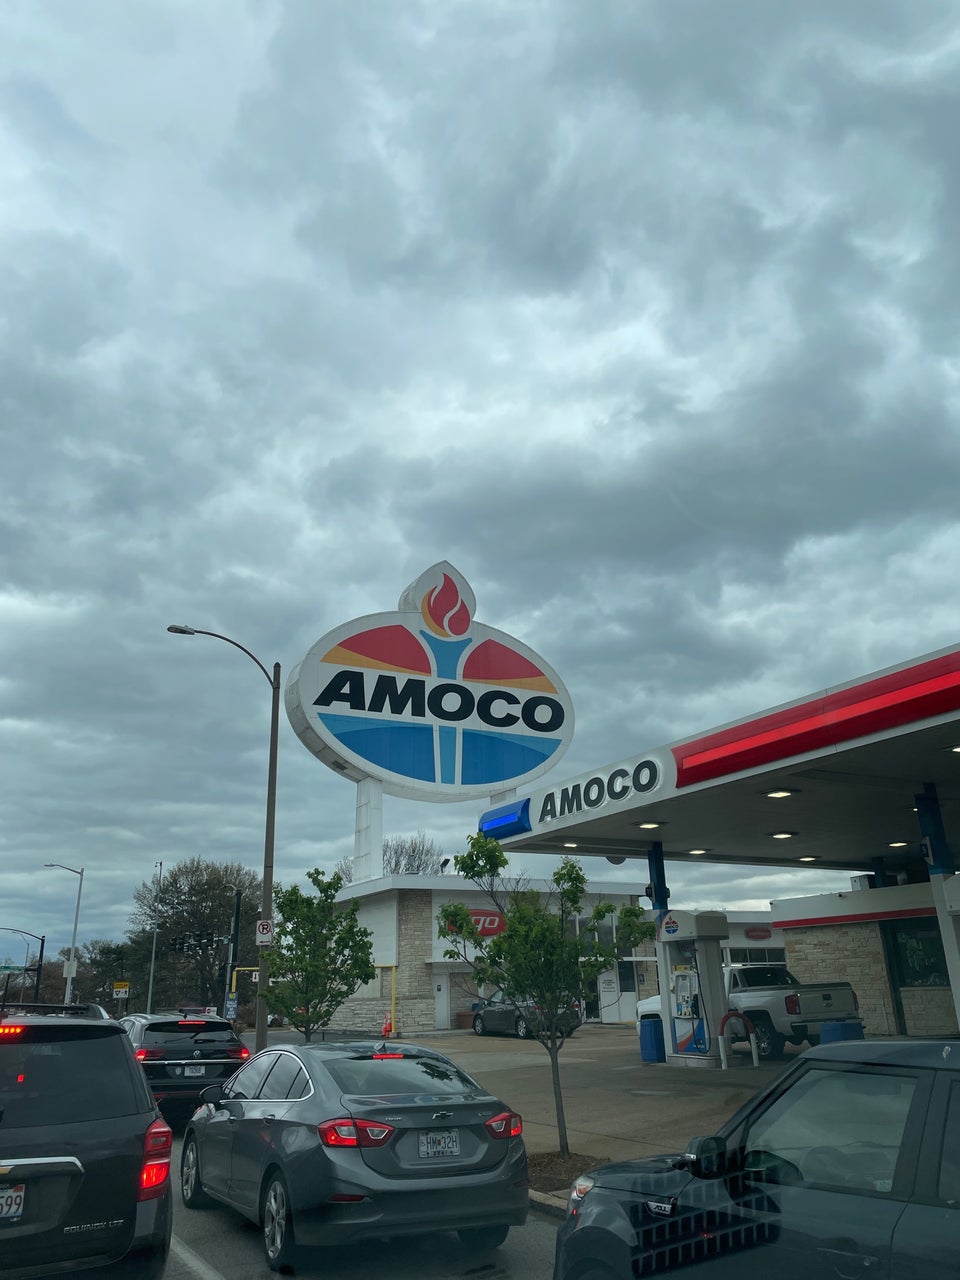 Giant Amoco Car wash